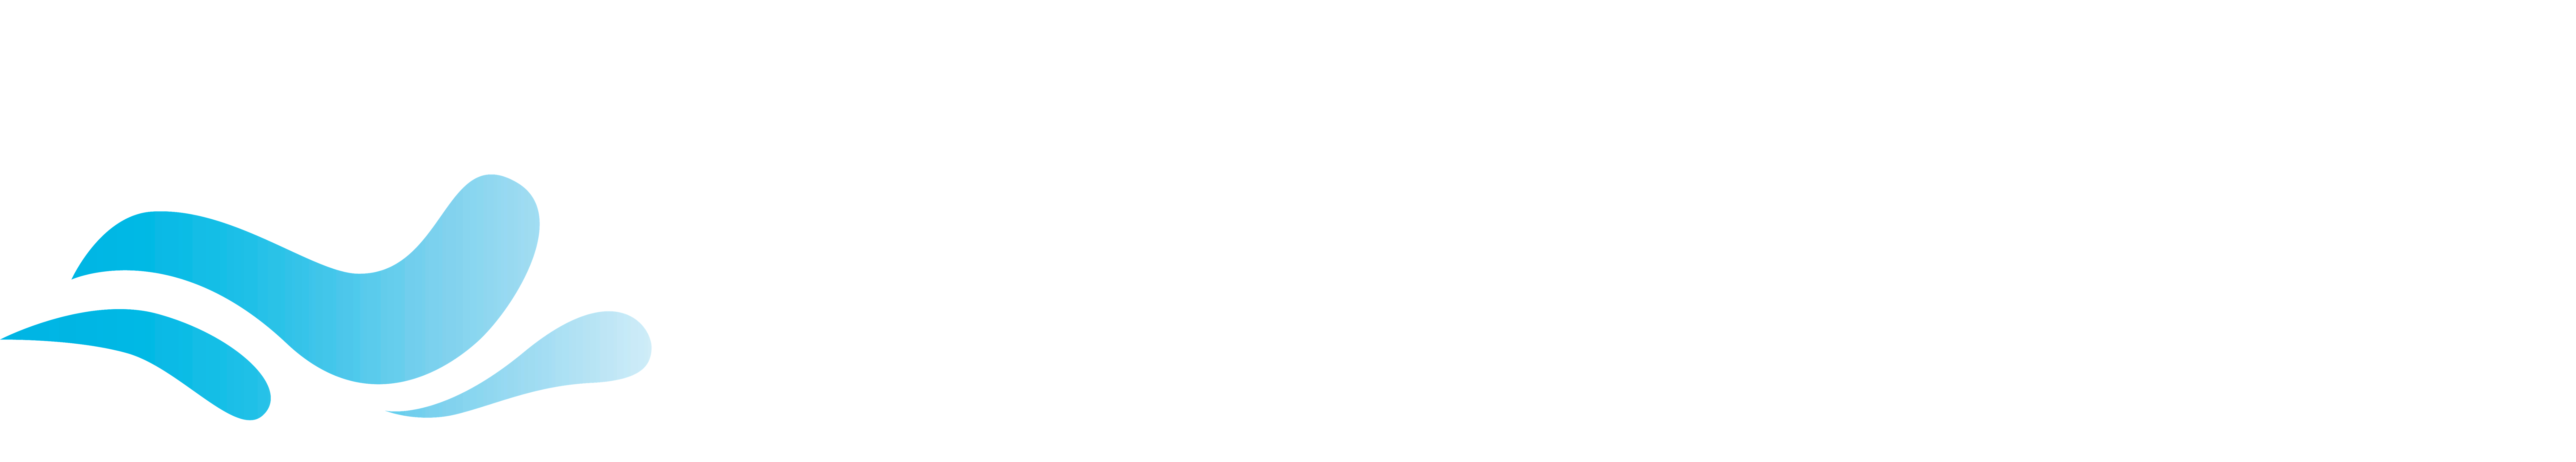 Swimm-Logo-_Witte-Letters_